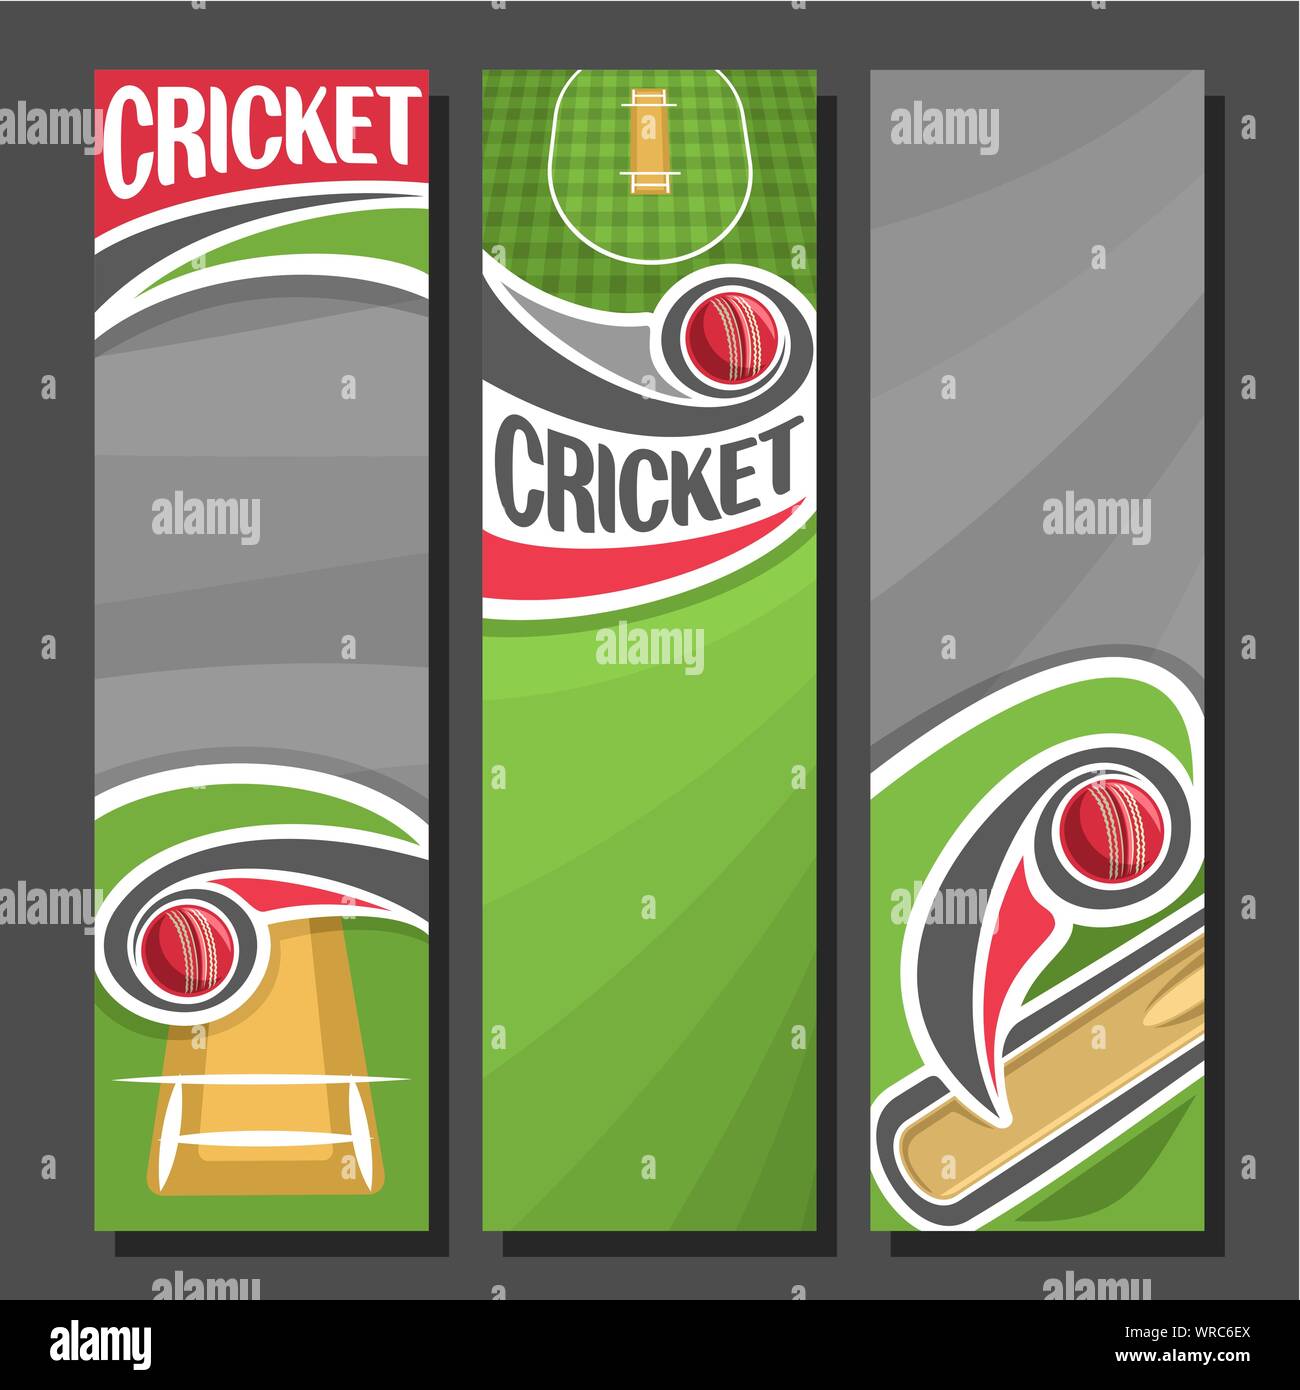 Vektor vertikale Banner für Cricket Spiel: 3 cartoon Layouts für Text auf Cricket Theme, bat das Schlagen der roten Kugel oben karierten Feld mit Pitch zu gre Stock Vektor